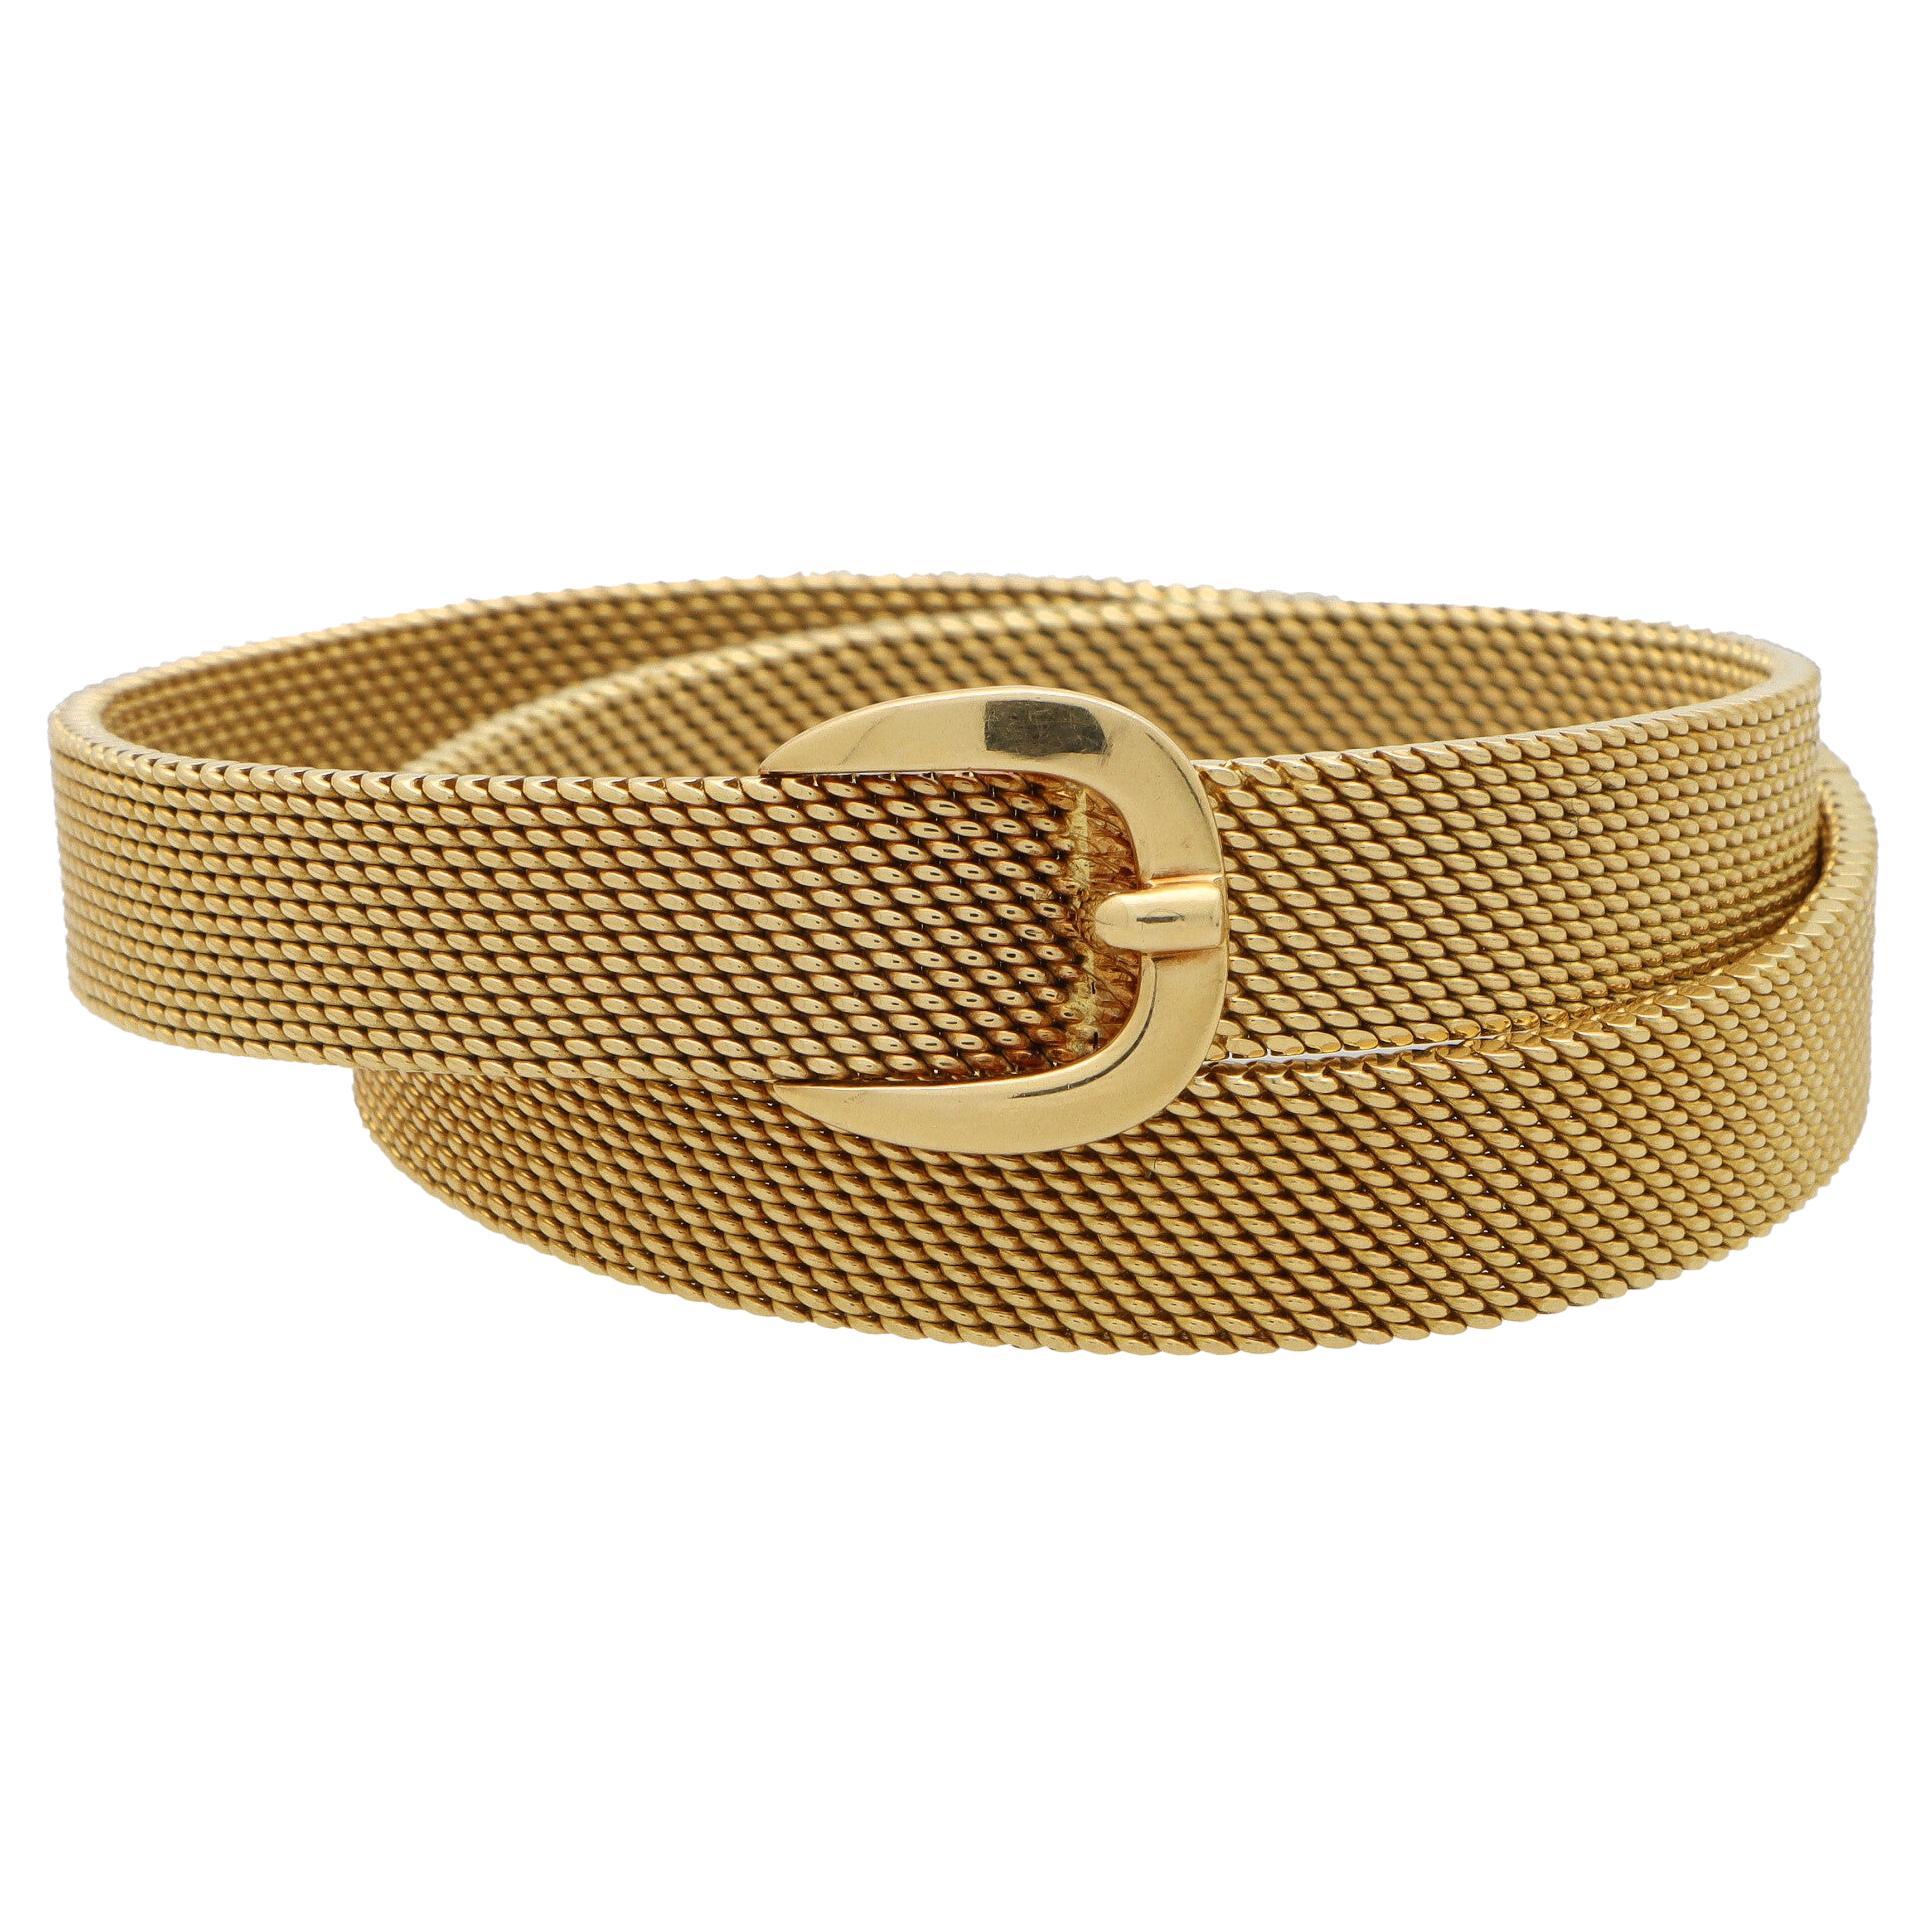 Vintage Hermès Belt Buckle Wrap Bracelet Set in Solid 18k Yellow Gold